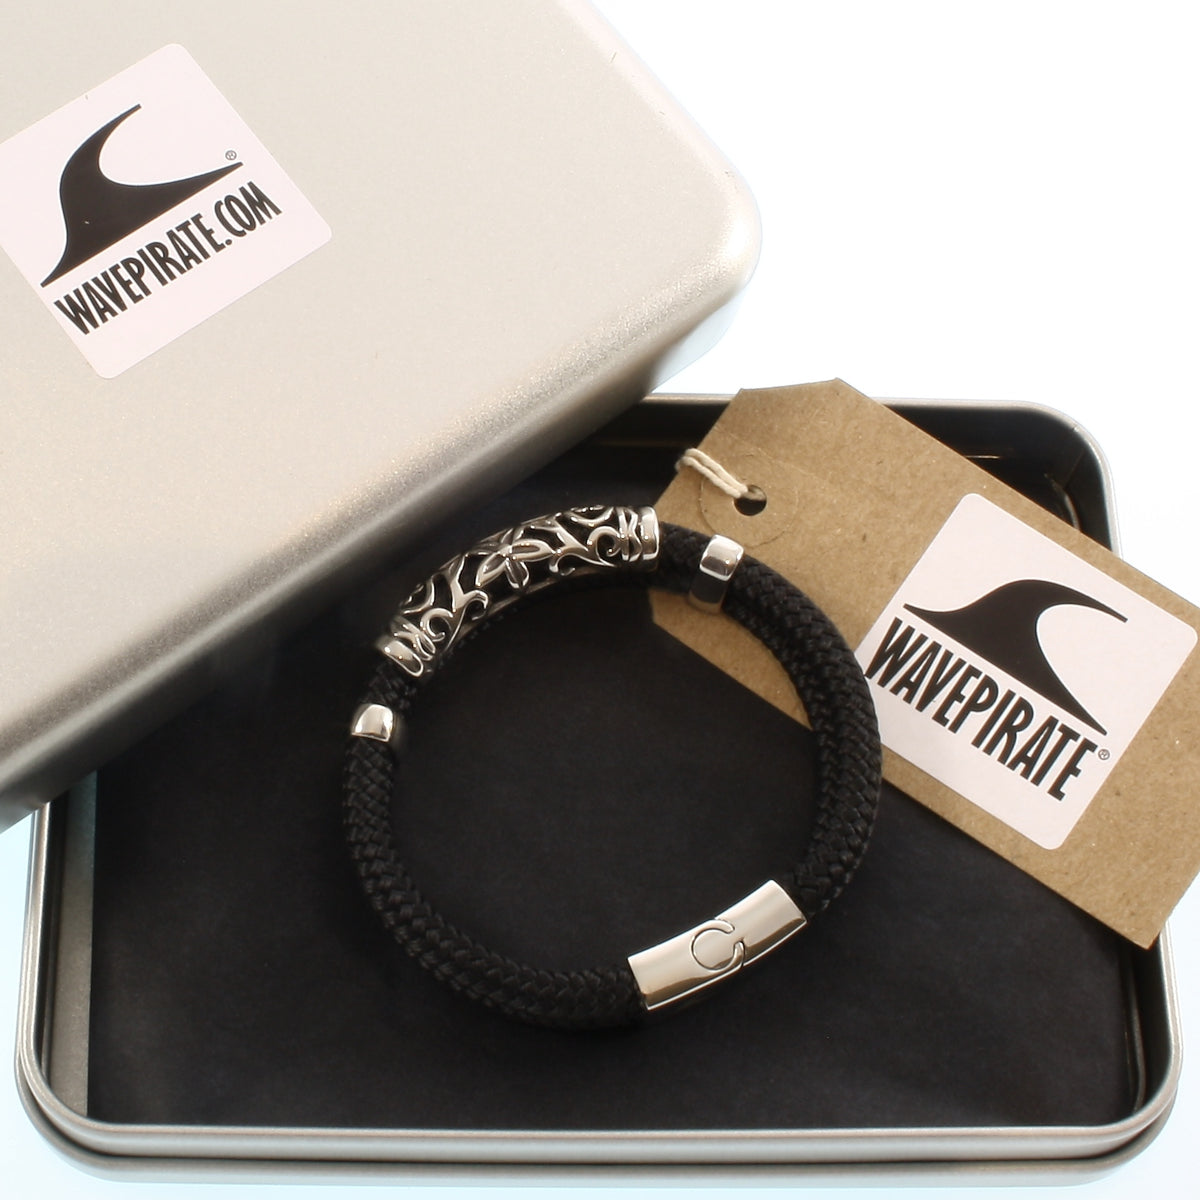 Herren-Segeltau-Armband-xo-schwarz-geflochten-Edelstahlverschluss-geschenkverpackung-wavepirate-shop-st